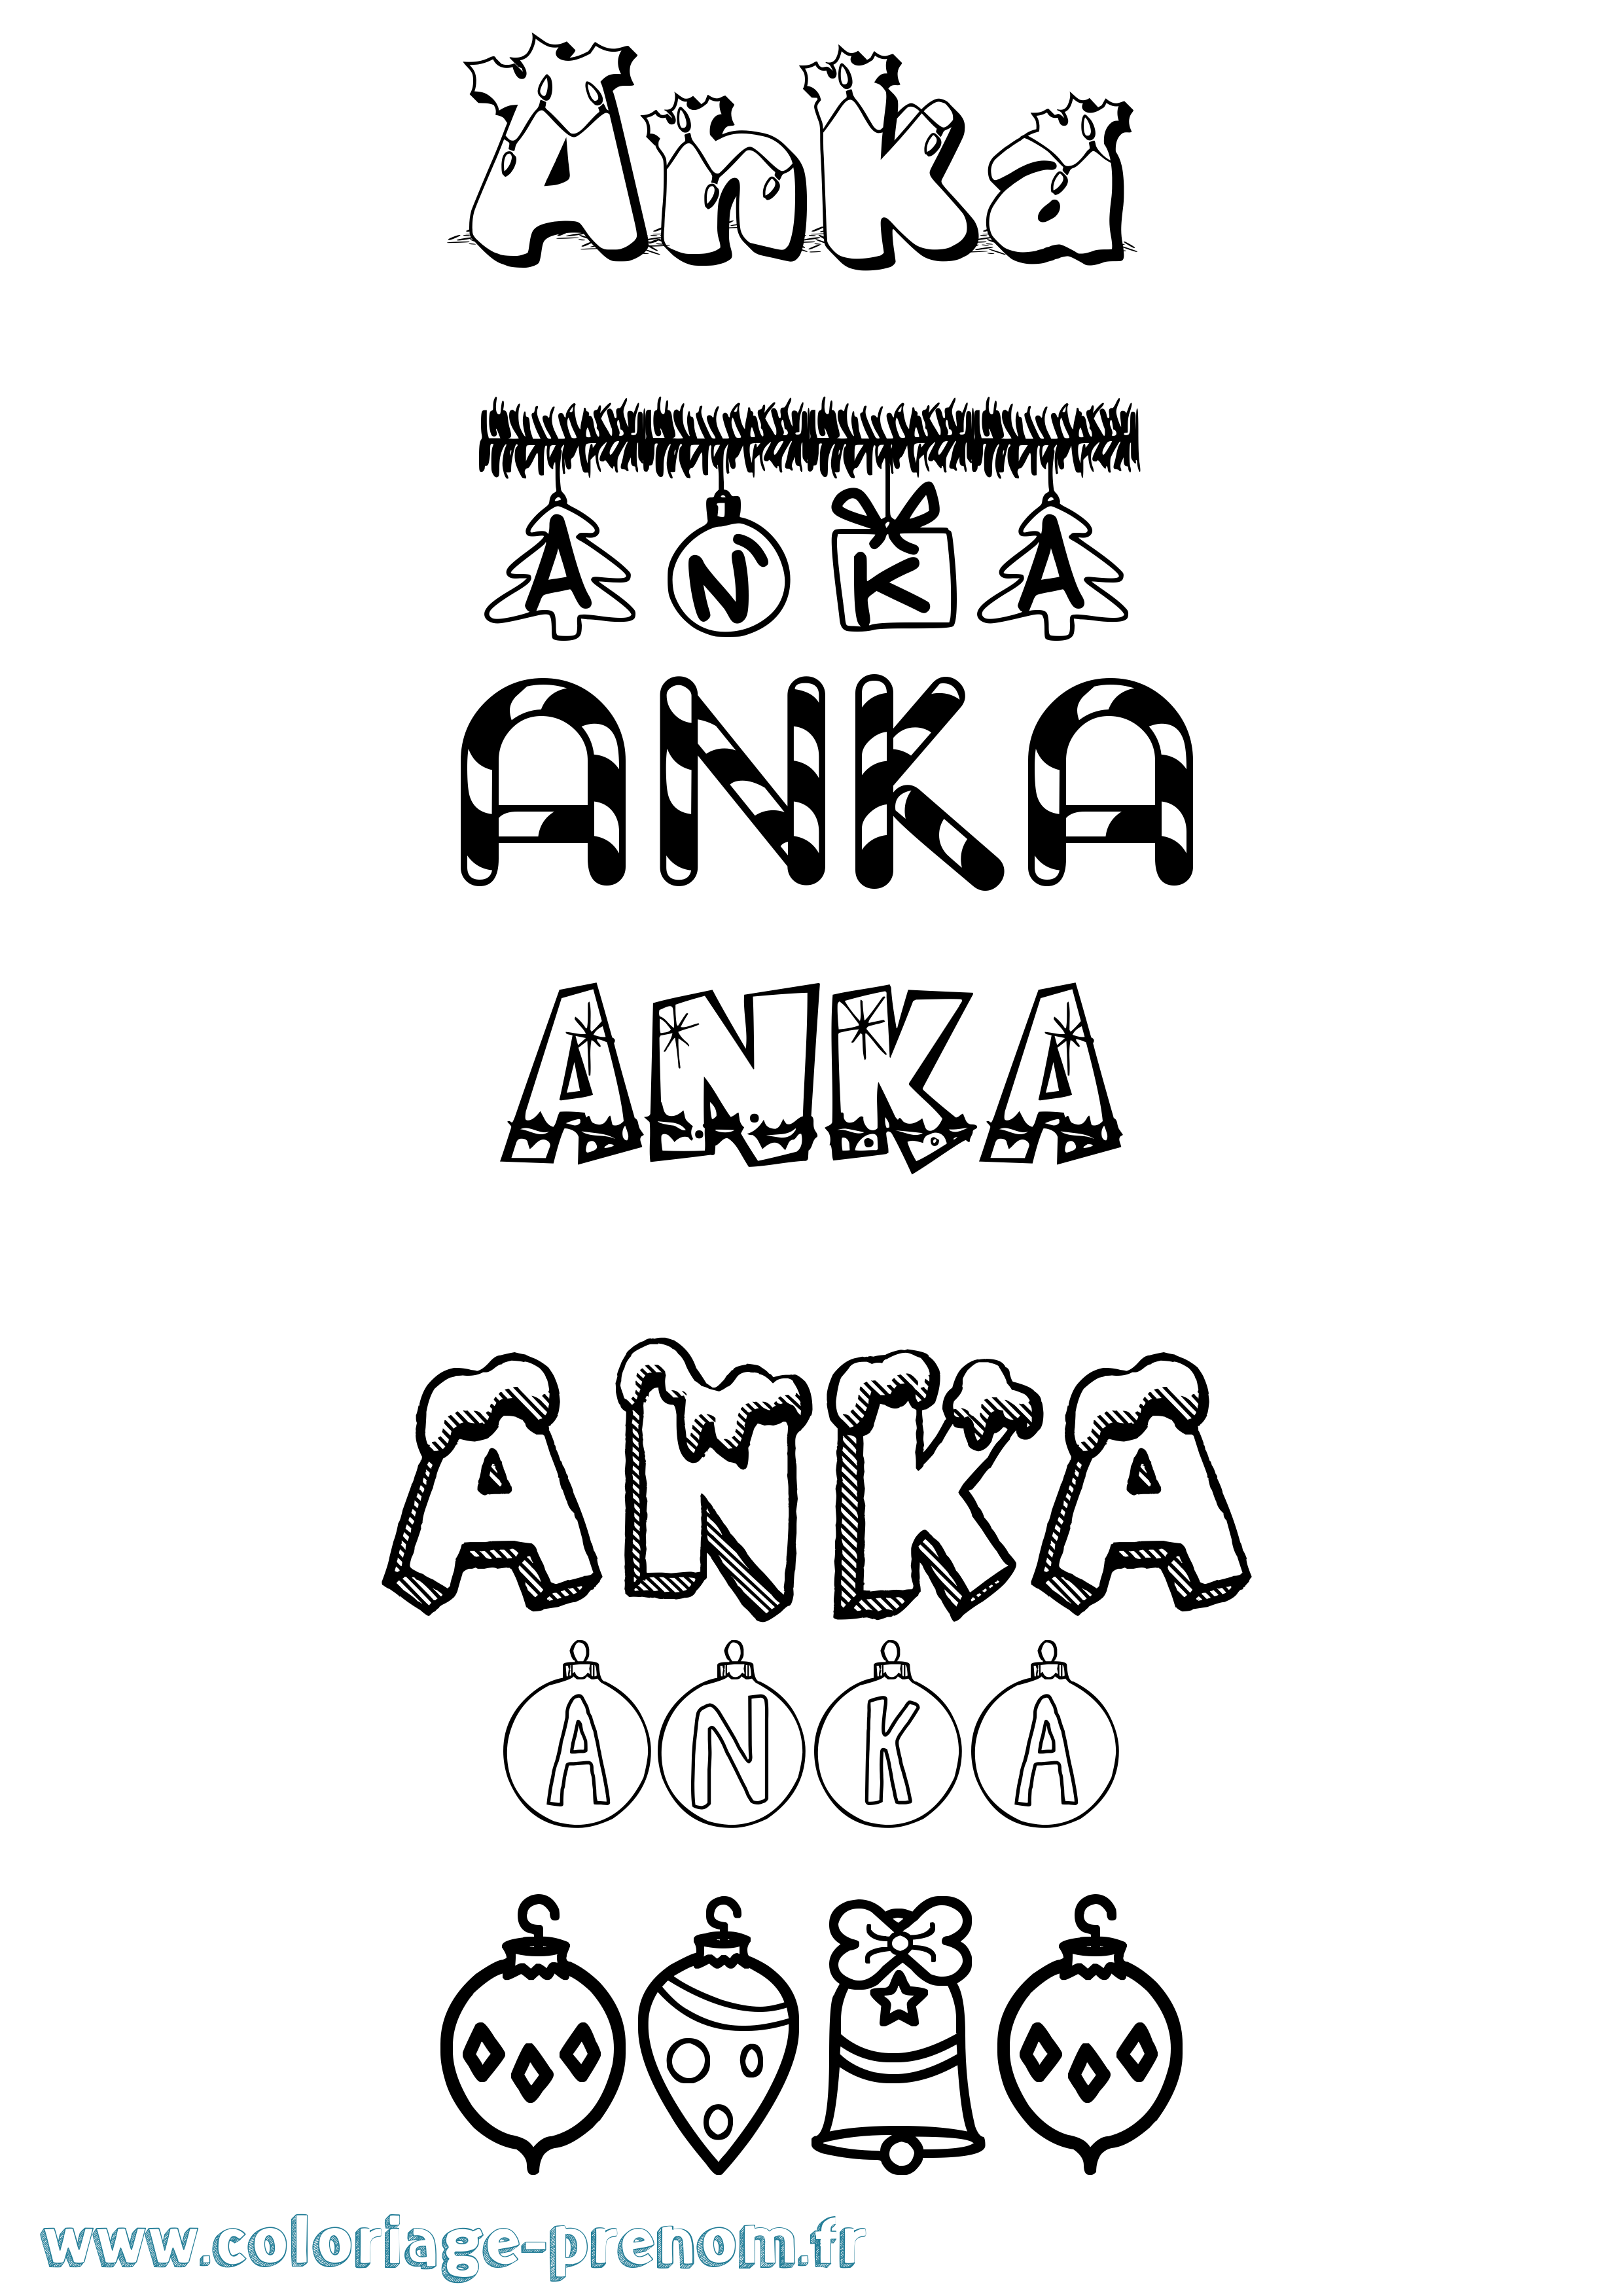 Coloriage prénom Anka Noël